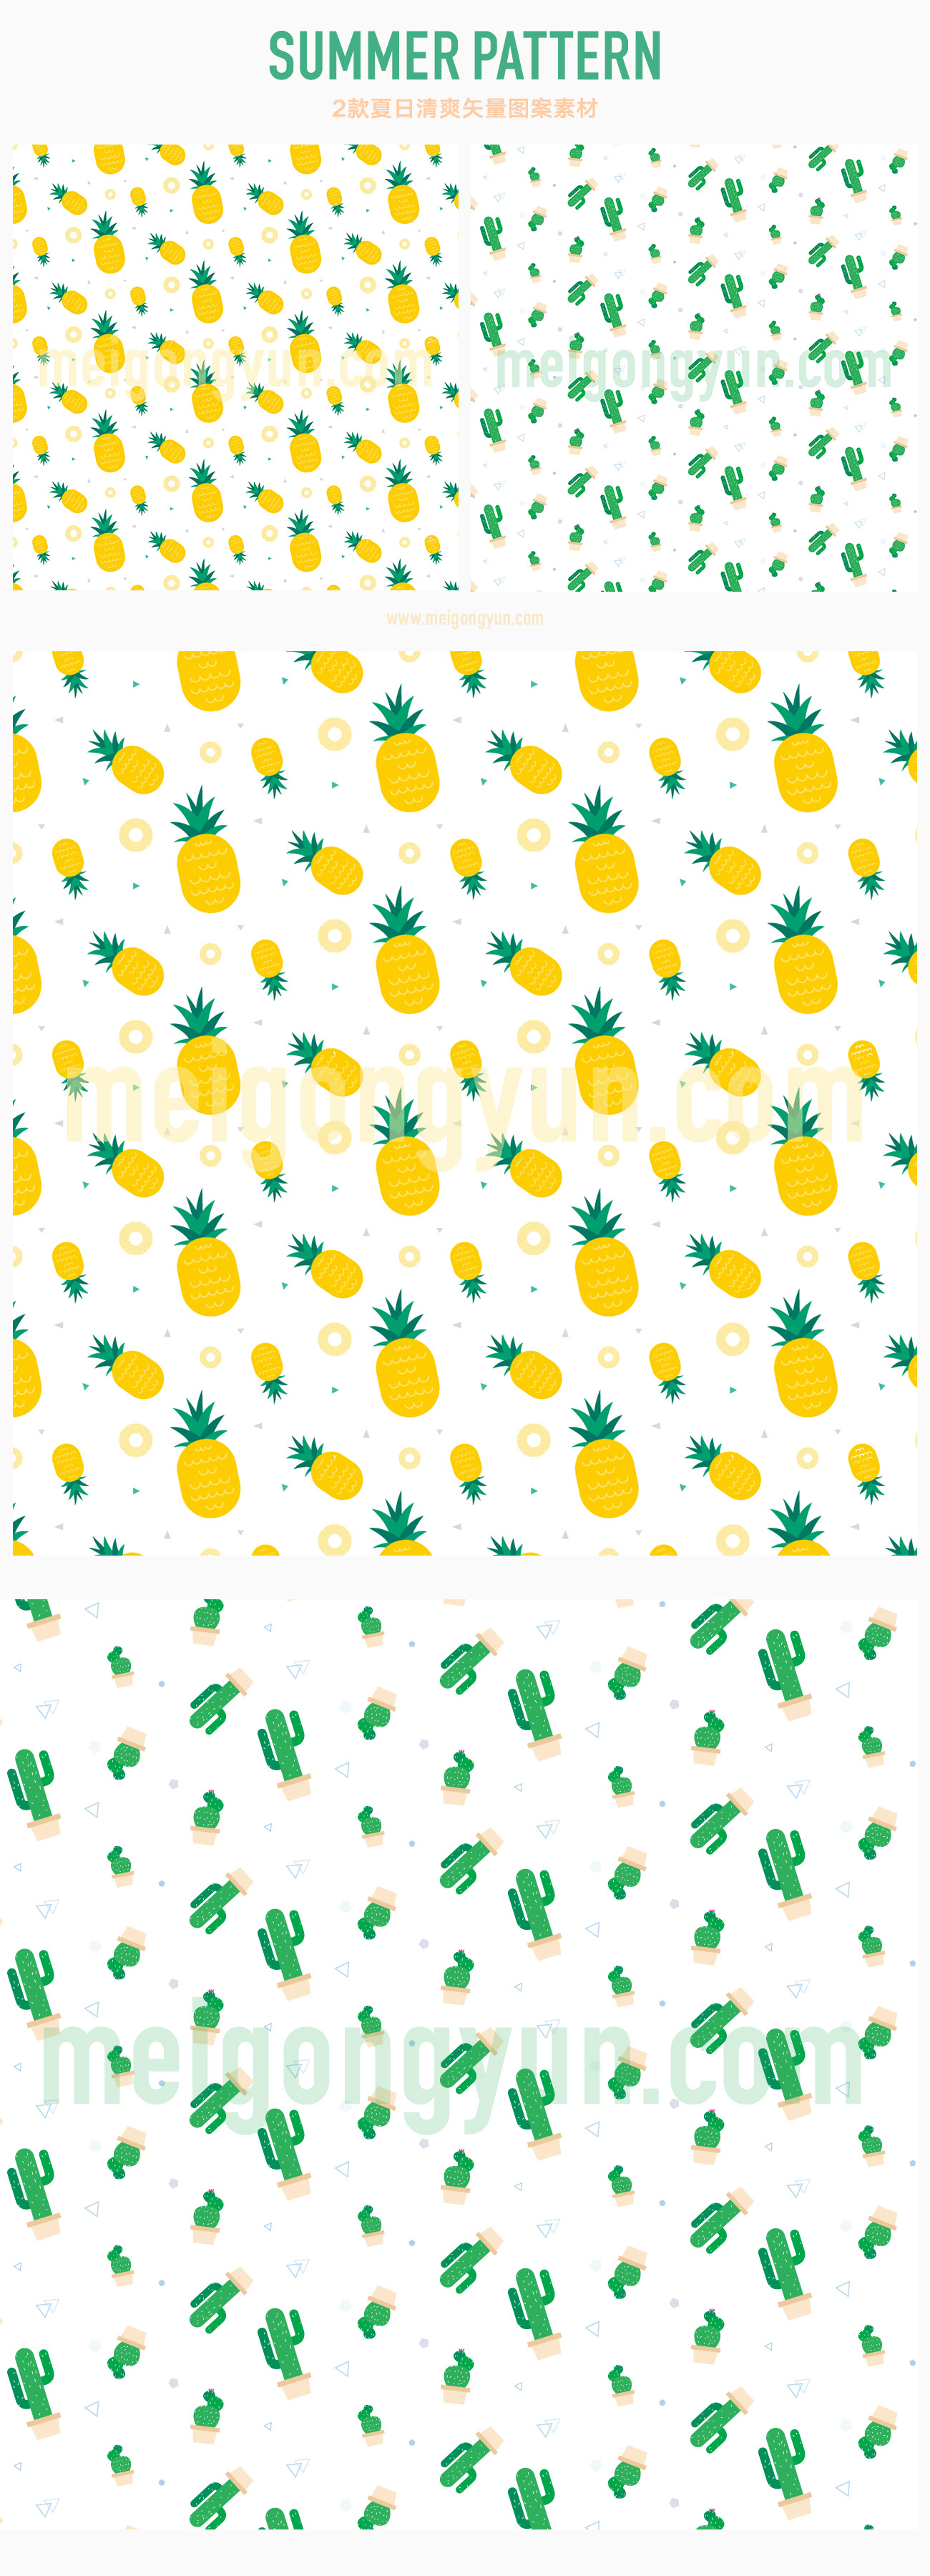 2枚清凉夏日【菠萝&仙人掌】无缝拼接AI矢量图案素材